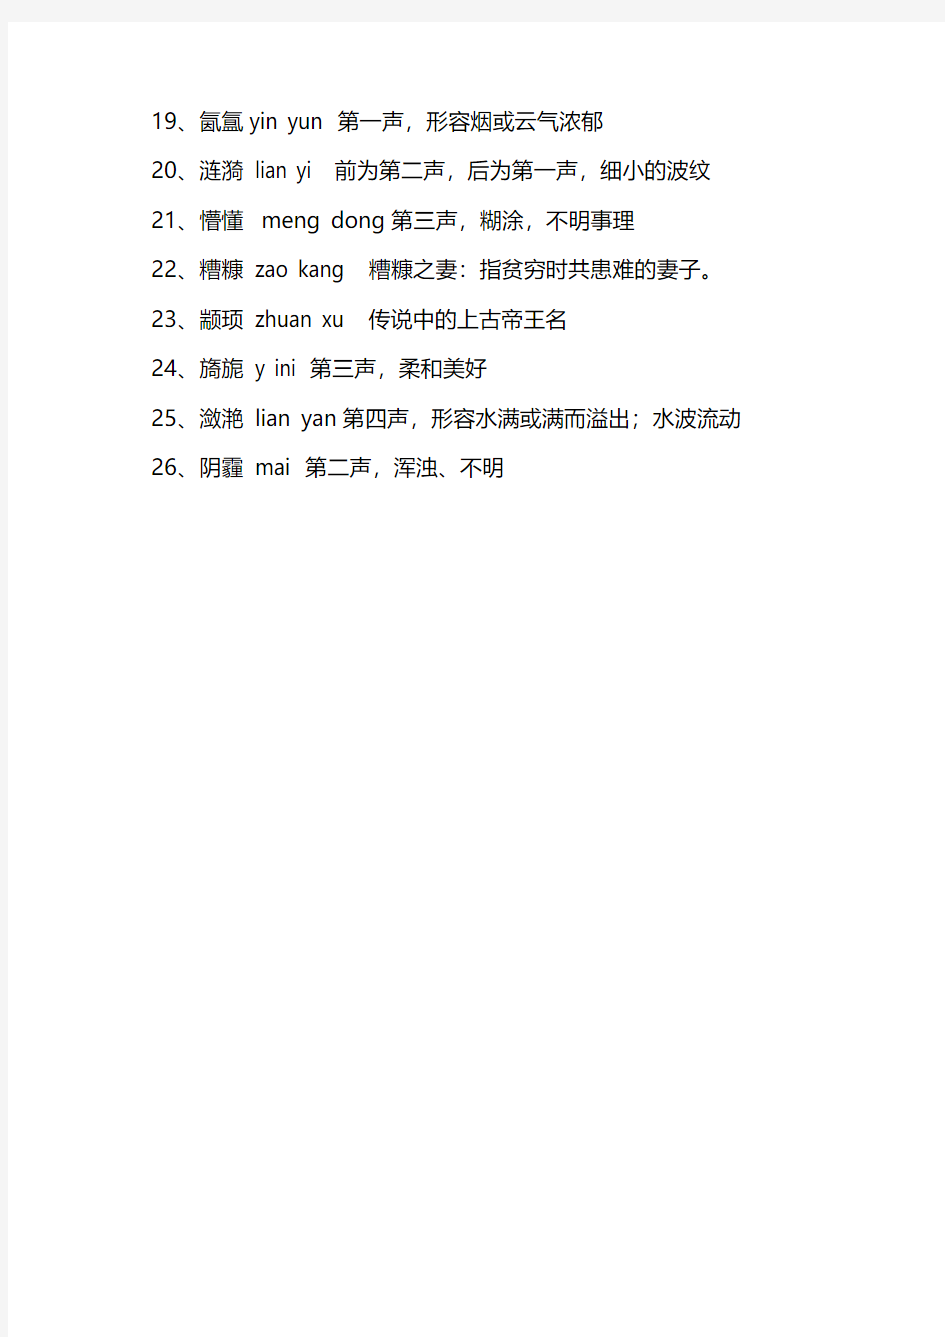 最难写最难读的汉语词语